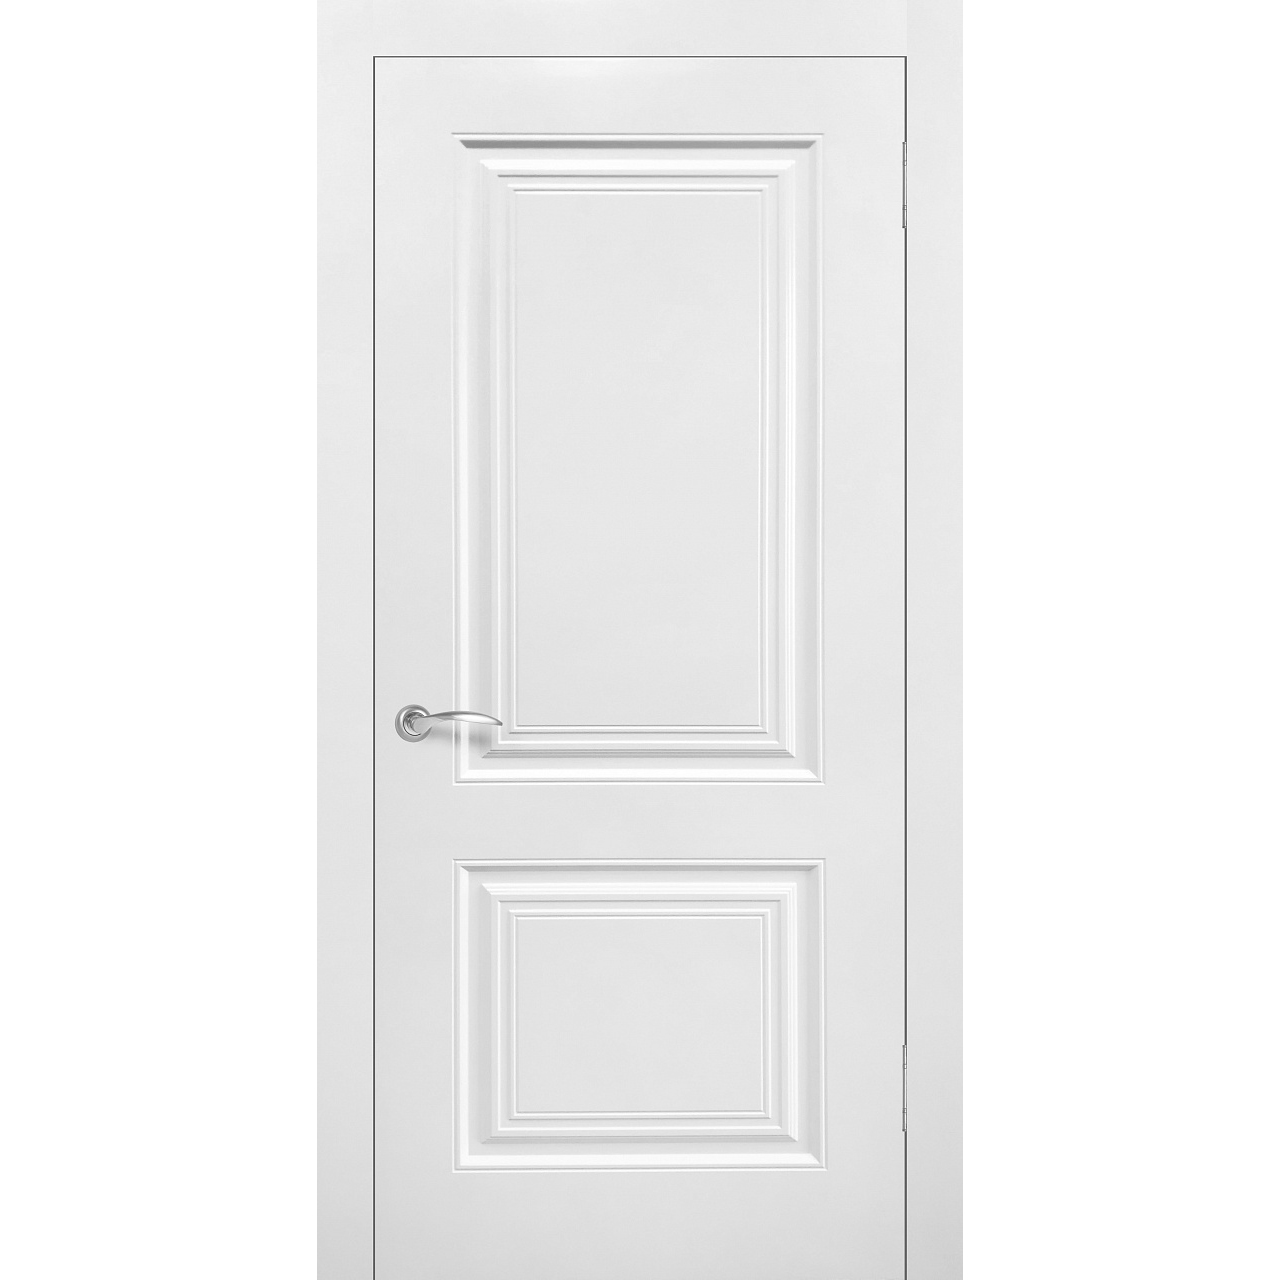 Межкомнатная дверь эмаль классика «Роял 2» (глухая)